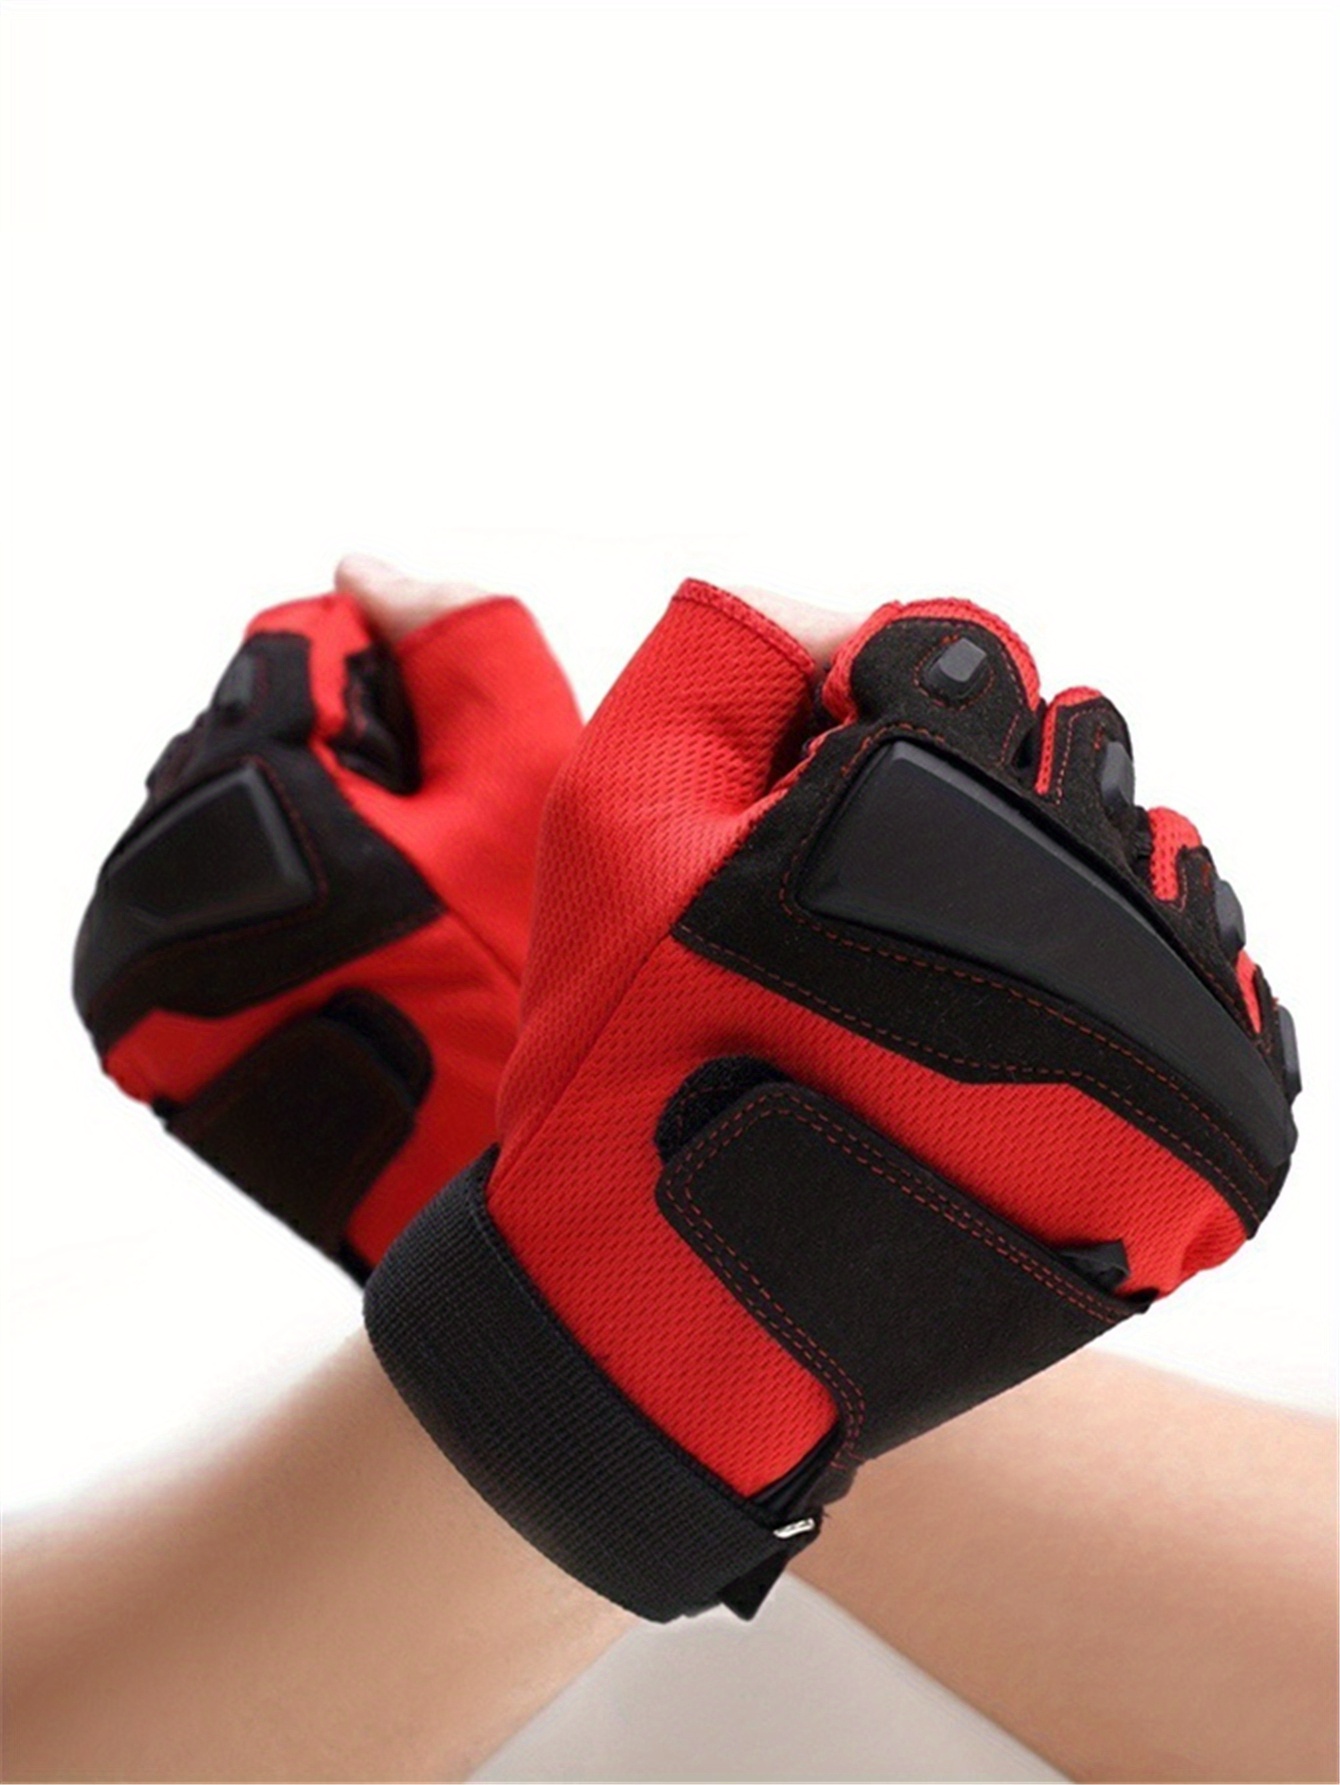 Mens Red and Black Fingerless Gloves